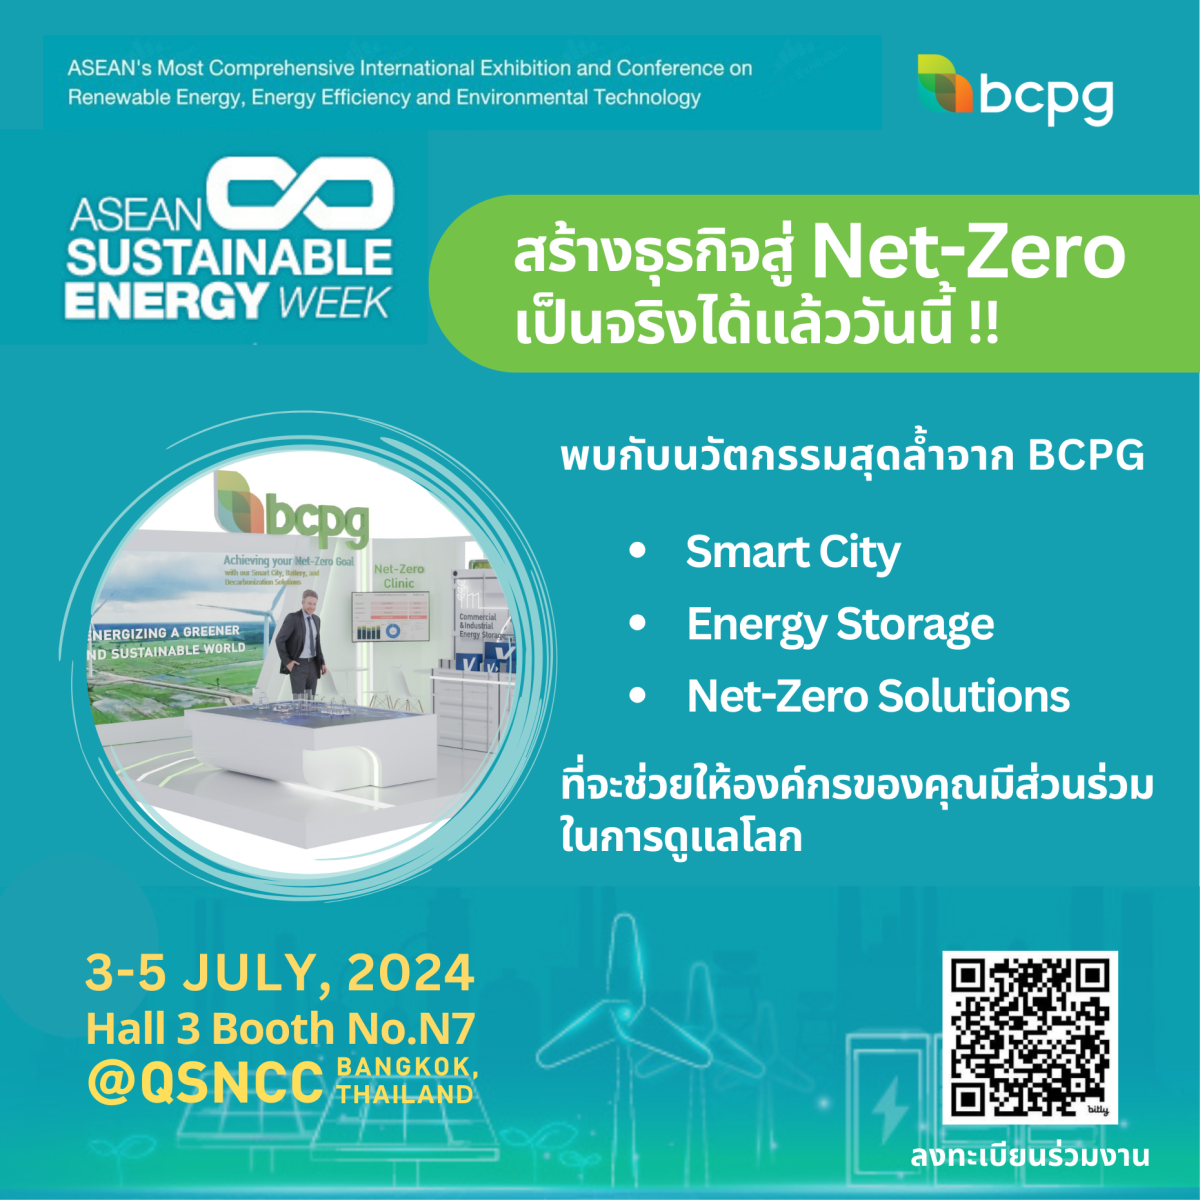 BCPG โชว์นวัตกรรมและเทคโนโลยีสุดล้ำ ช่วยลดก๊าซเรือนกระจกให้กับทุกองค์กร เพื่อพร้อมรับมือคาร์บอนแท็กซ์ พบกันที่บูธ N7 ในงาน ASEAN Sustainable Energy Week 2024 วันที่ 3-5 กรกฎาคมนี้ ณ